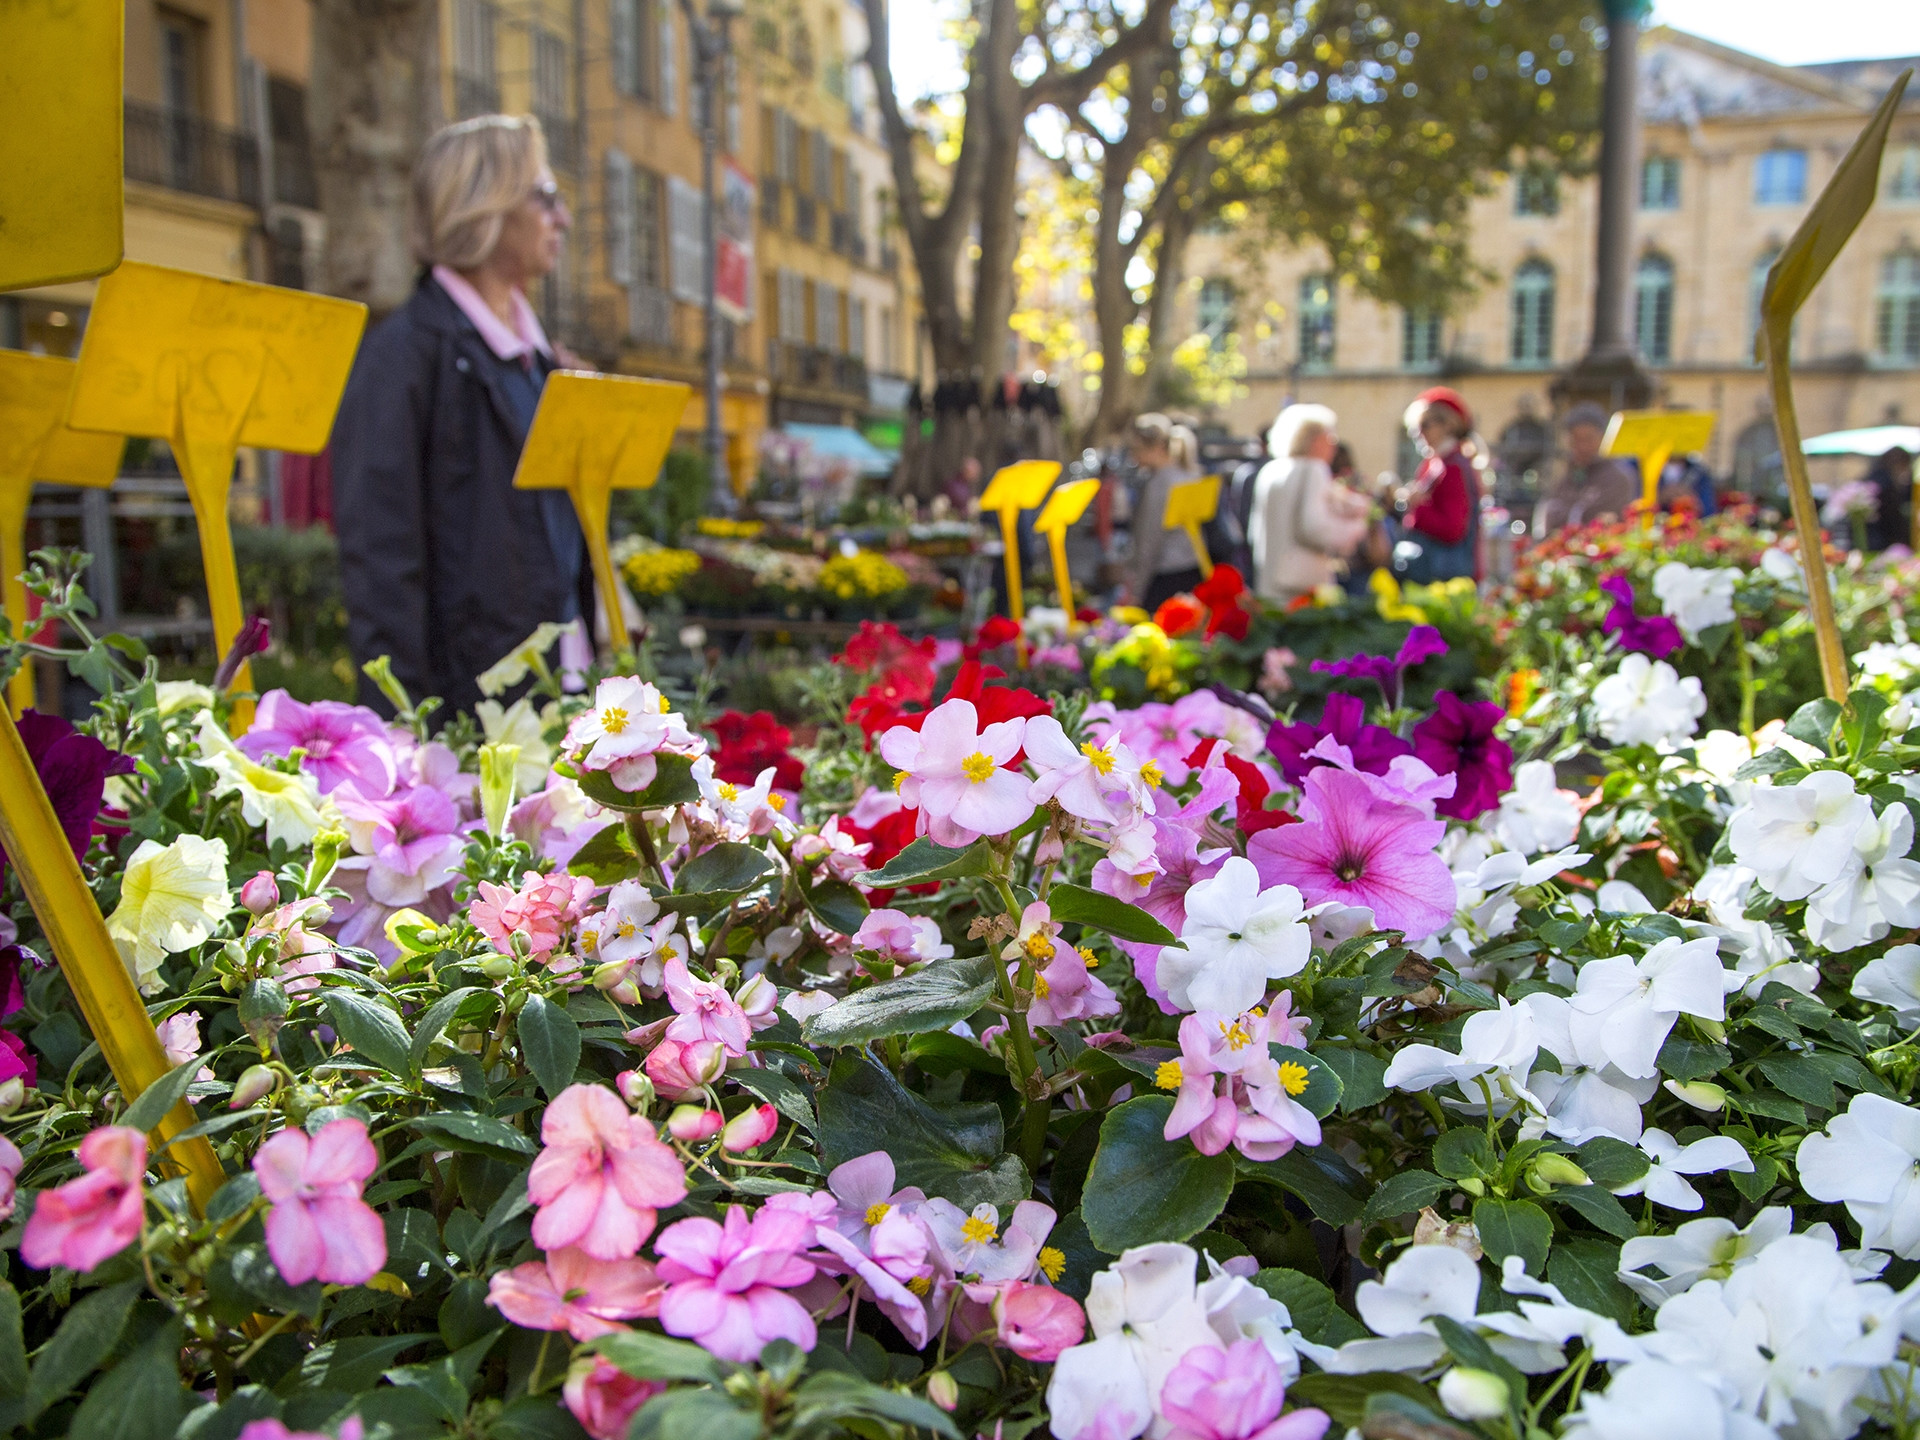 Le marché aux fleurs d'Aix-en-Provence (1/1)